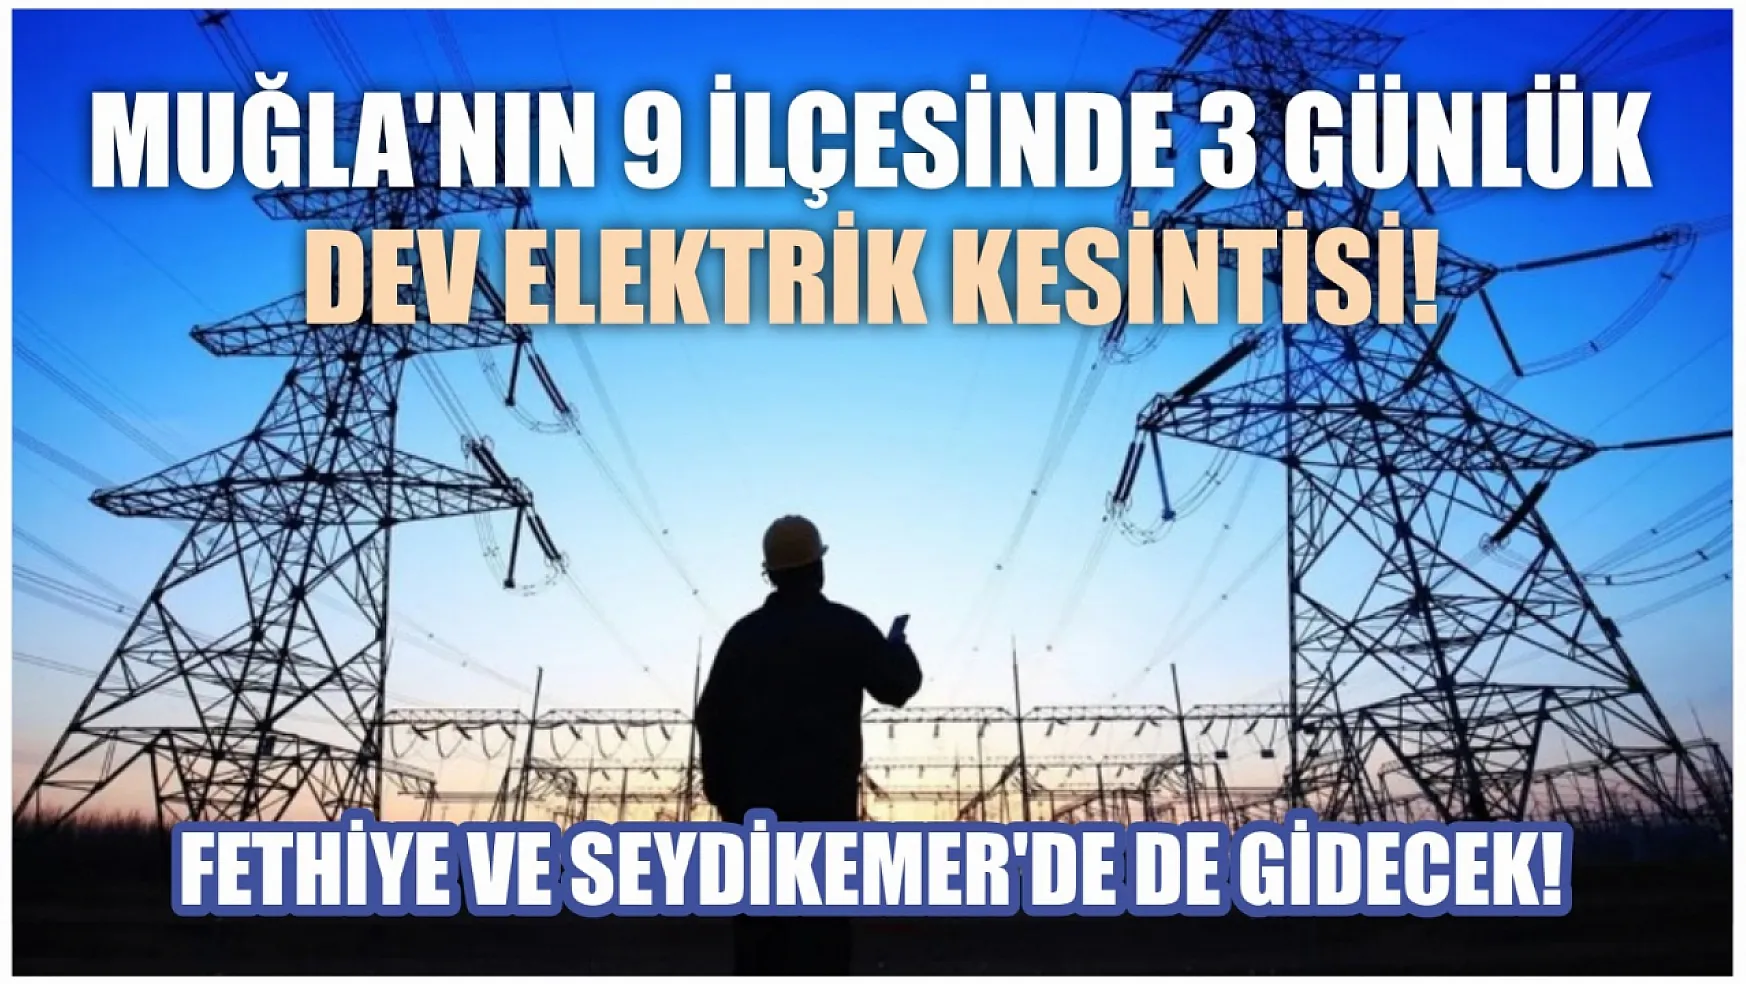 Muğla'nın 9 ilçesinde 3 günlük dev elektrik kesintisi! Fethiye ve Seydikemer'de de gidecek! 13-14-15 Mart elektrik kesintisi detaylar..